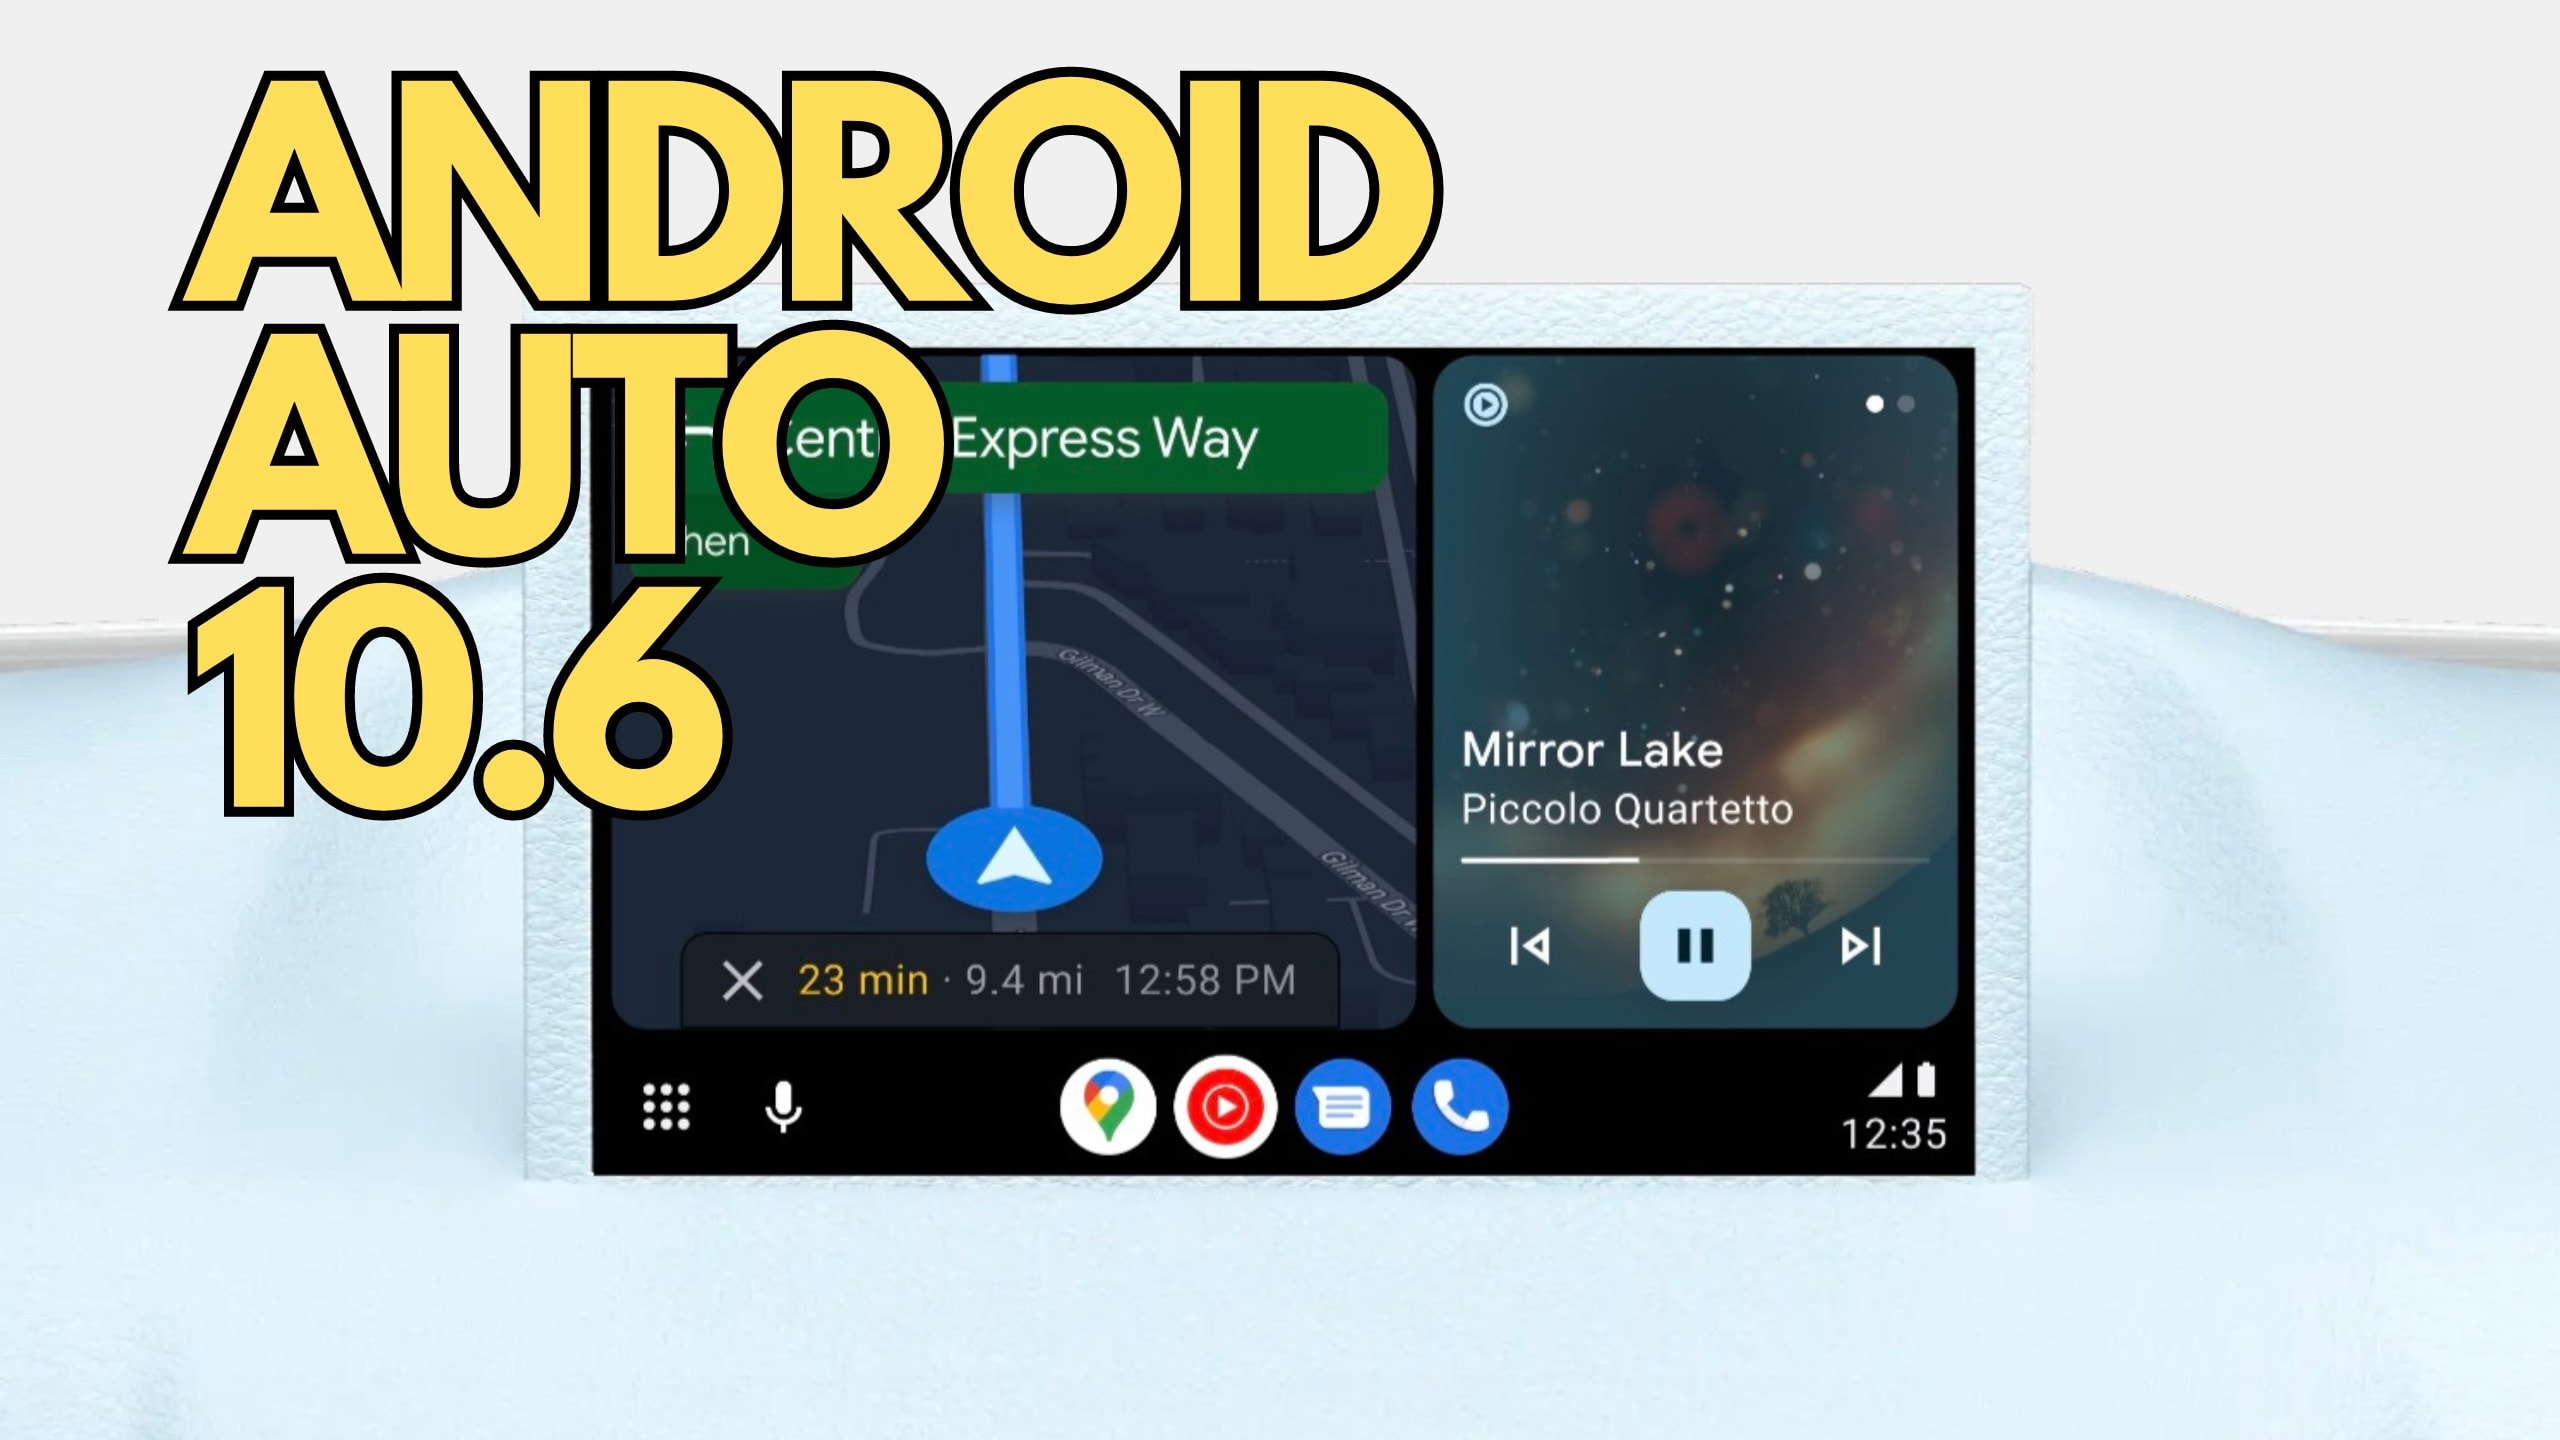 Nieuwe update: Android Auto 10.6 is nu beschikbaar om te downloaden